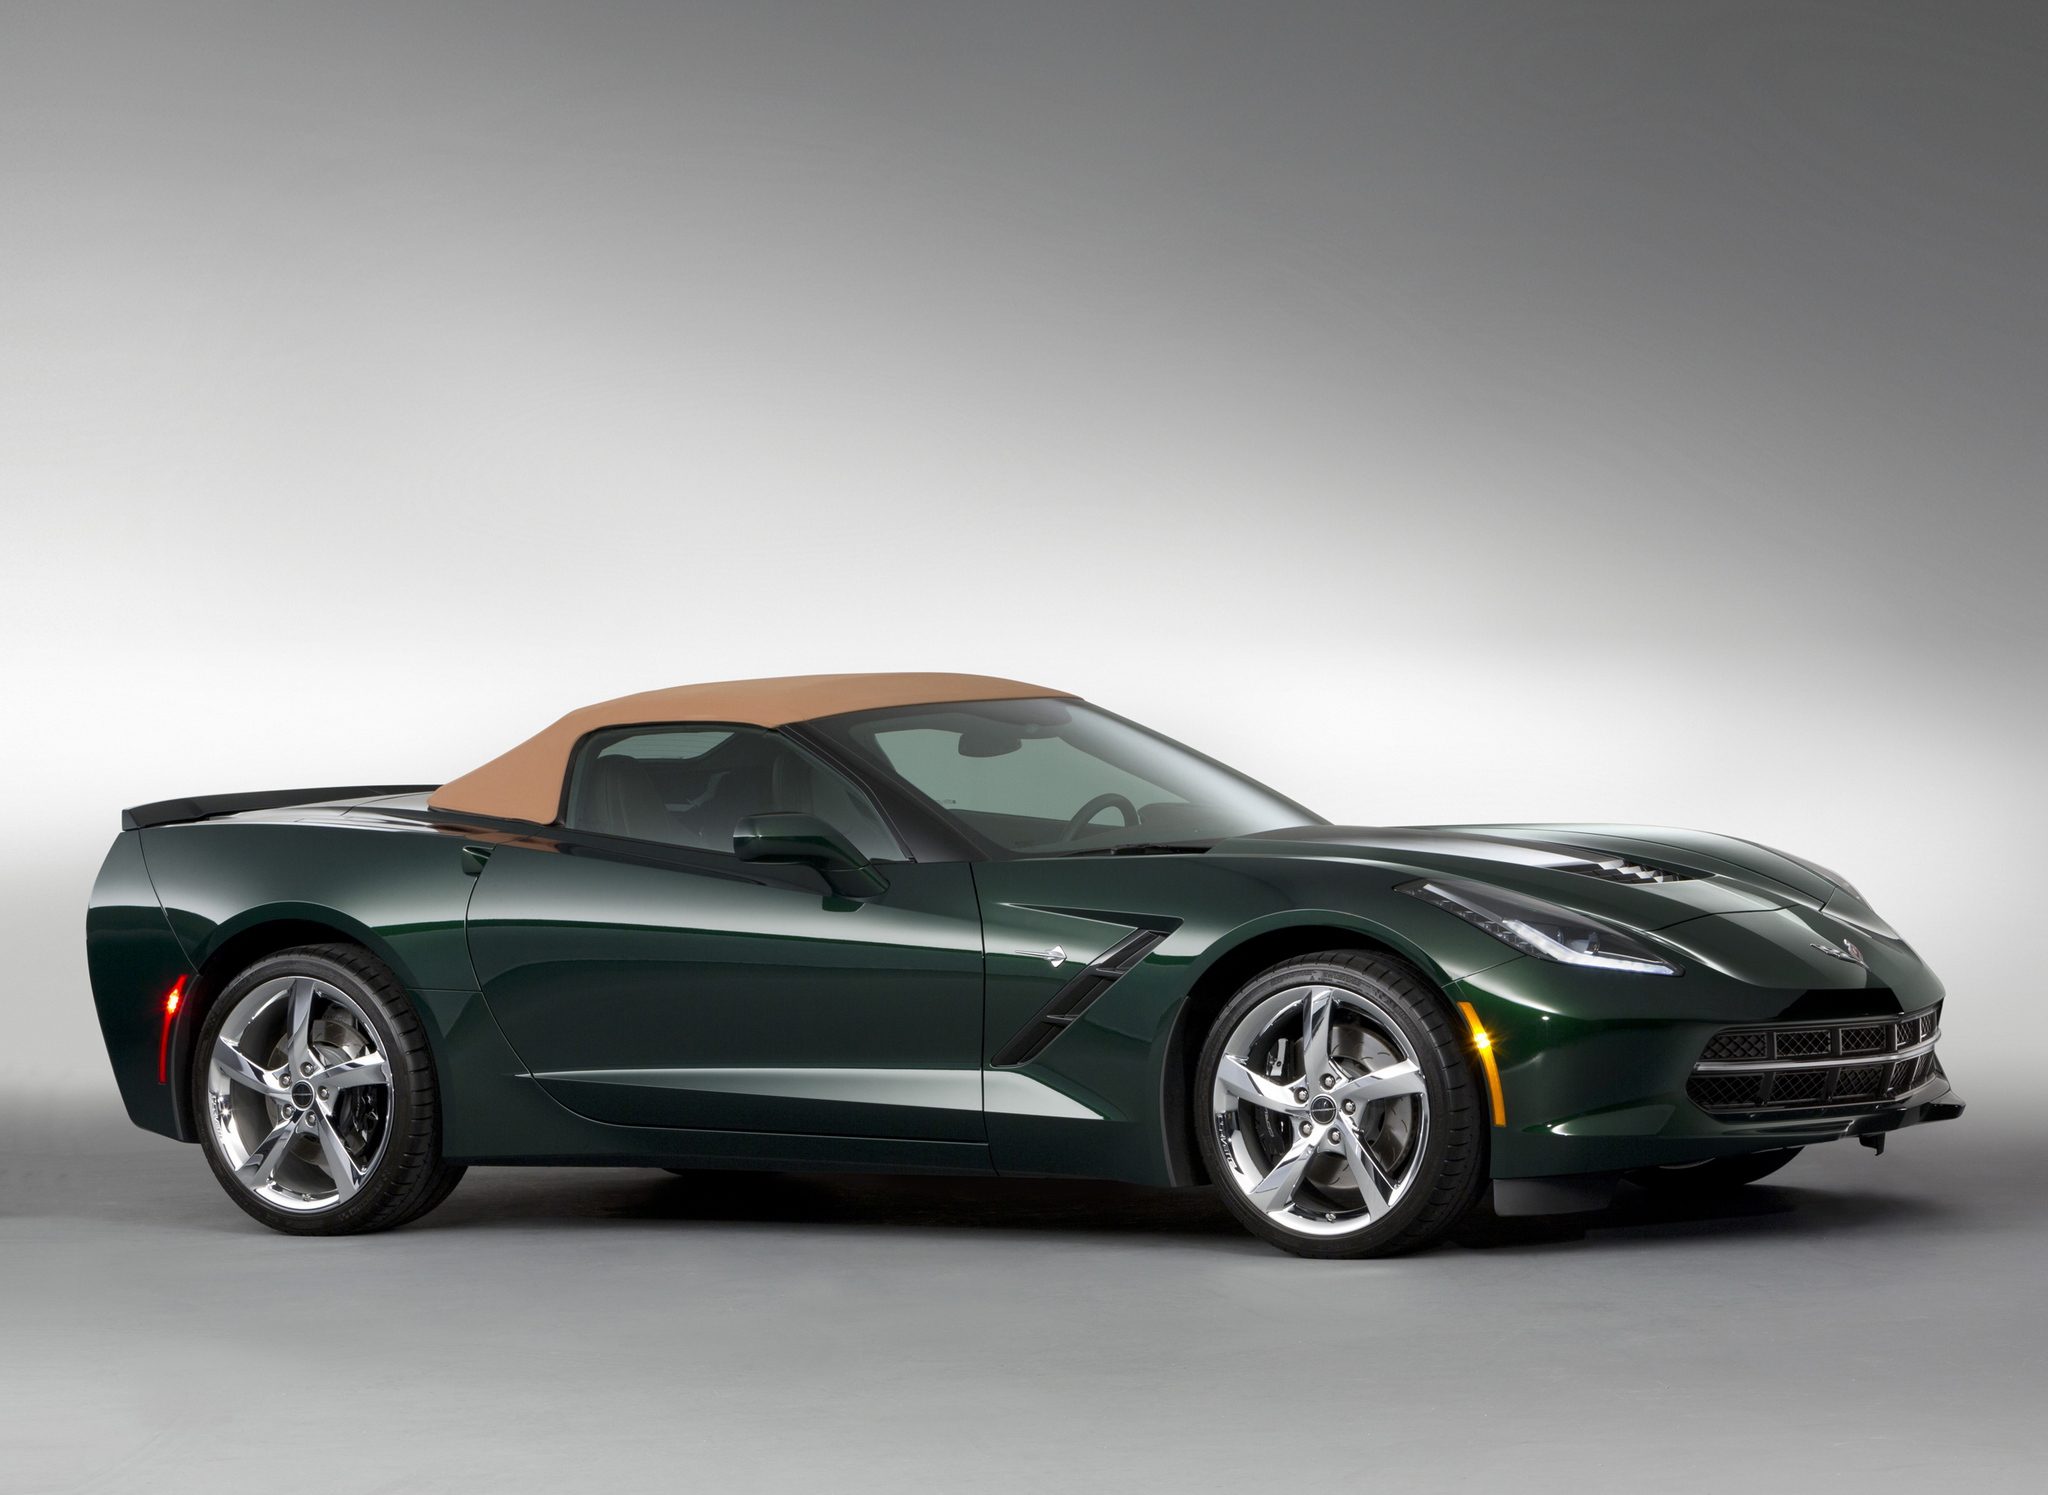 Corvette Of The Day: 2014 Chevrolet Corvette Stingray Convertible Premiere Edition